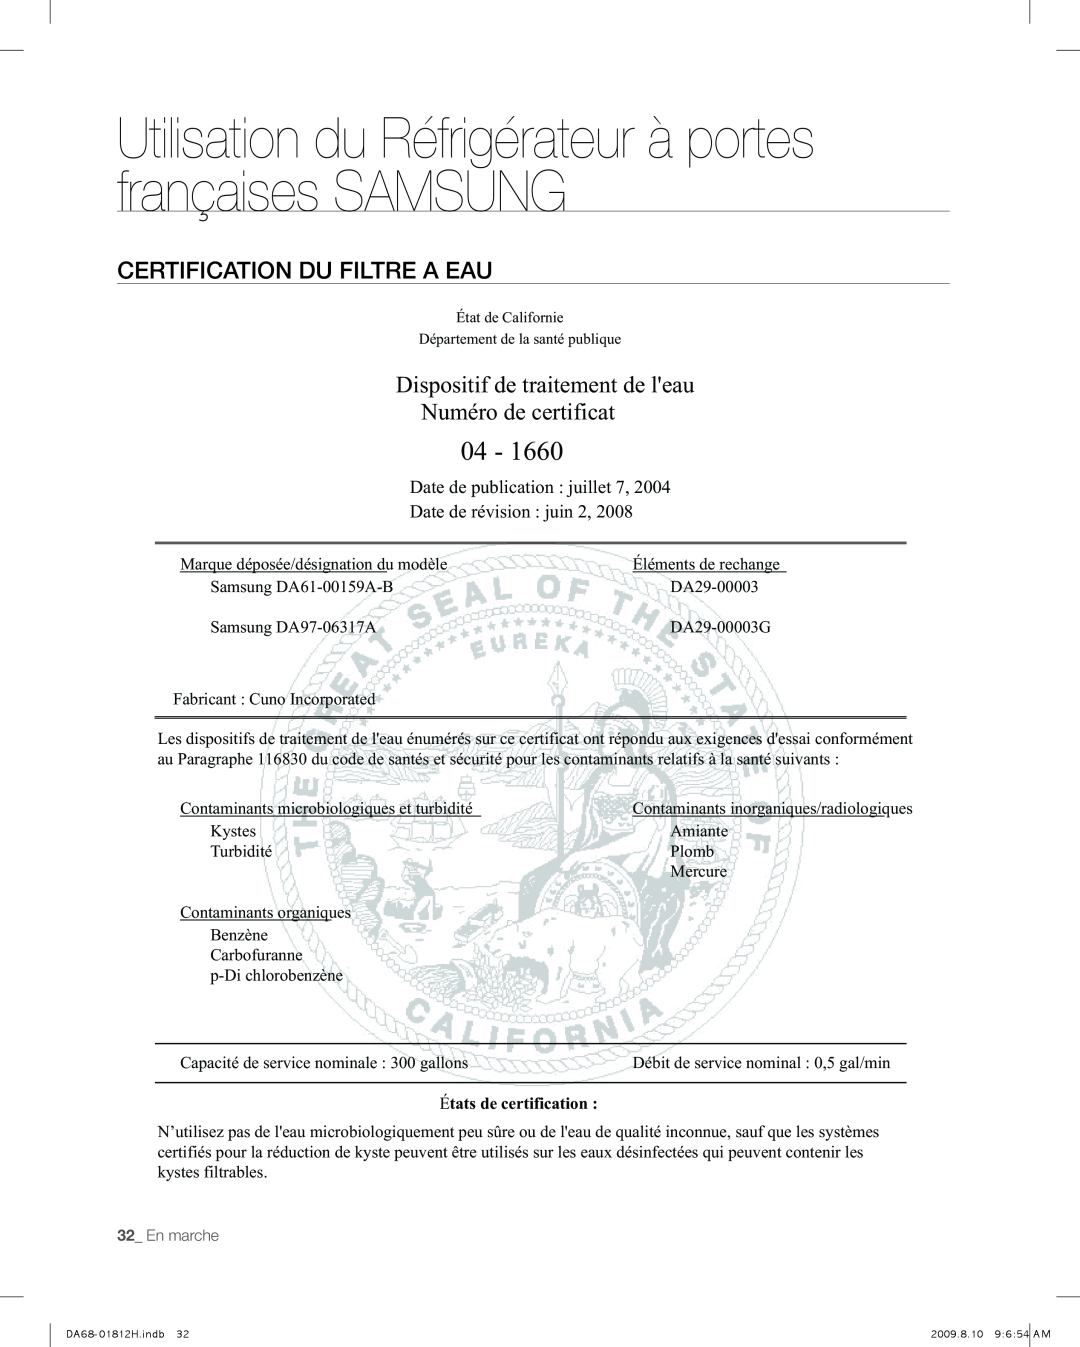 Samsung RF266AFBP, RF263AFBP Certification Du Filtre A Eau, 04, Dispositif de traitement de leau, Numéro de certificat 